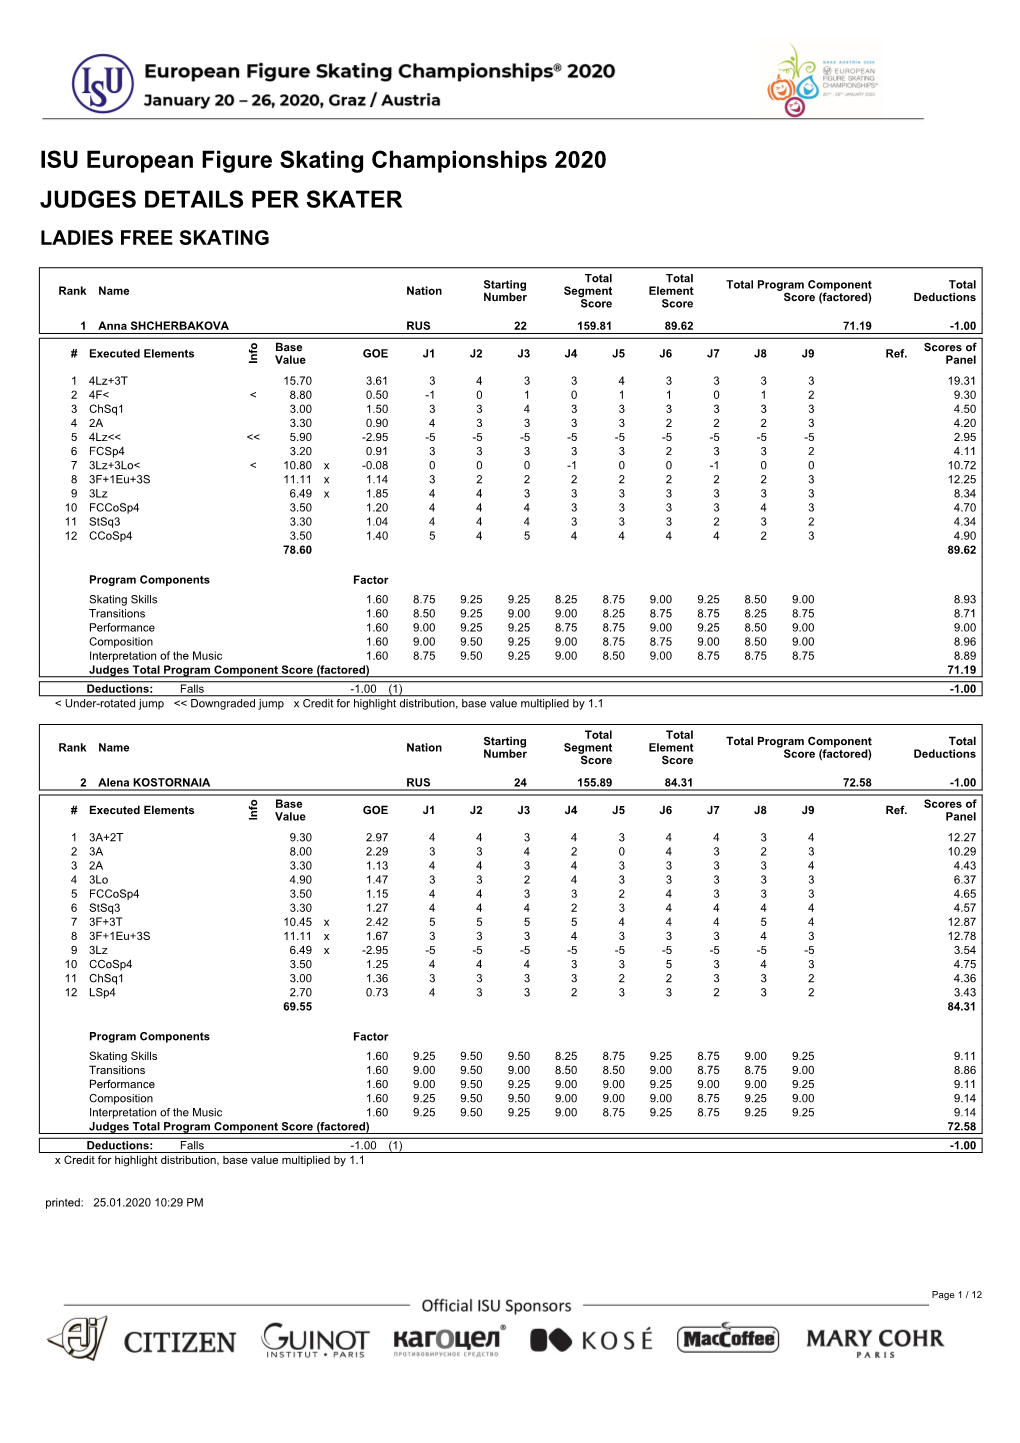 ISU European Figure Skating Championships 2020 JUDGES DETAILS PER SKATER LADIES FREE SKATING